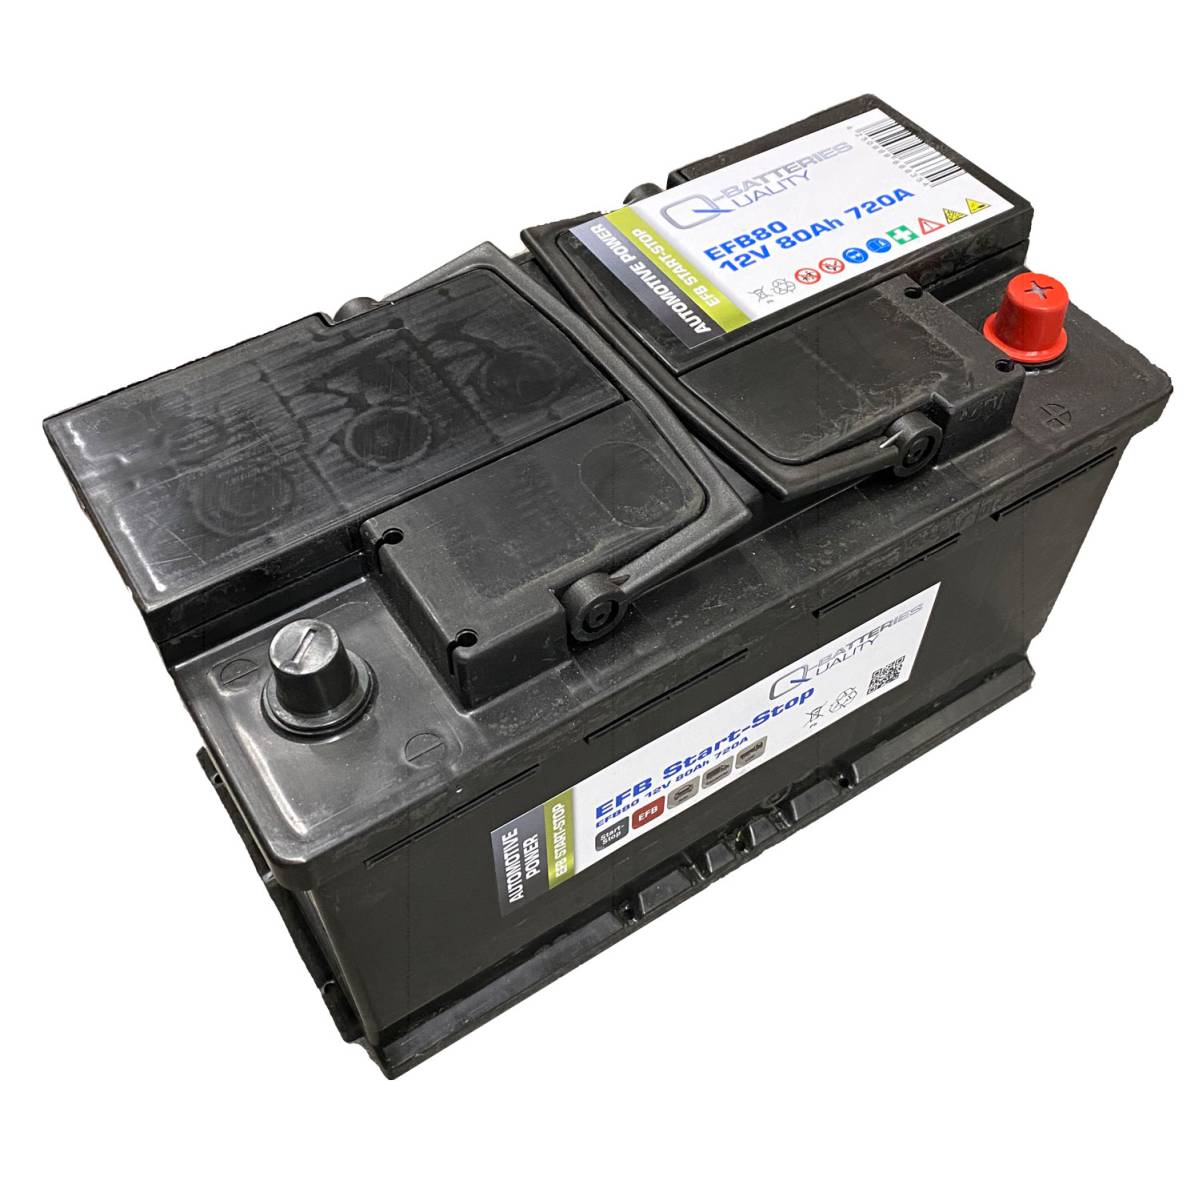 Q-Batteries Start-Stop EFB Autobatterie EFB80 12V 80Ah 720A